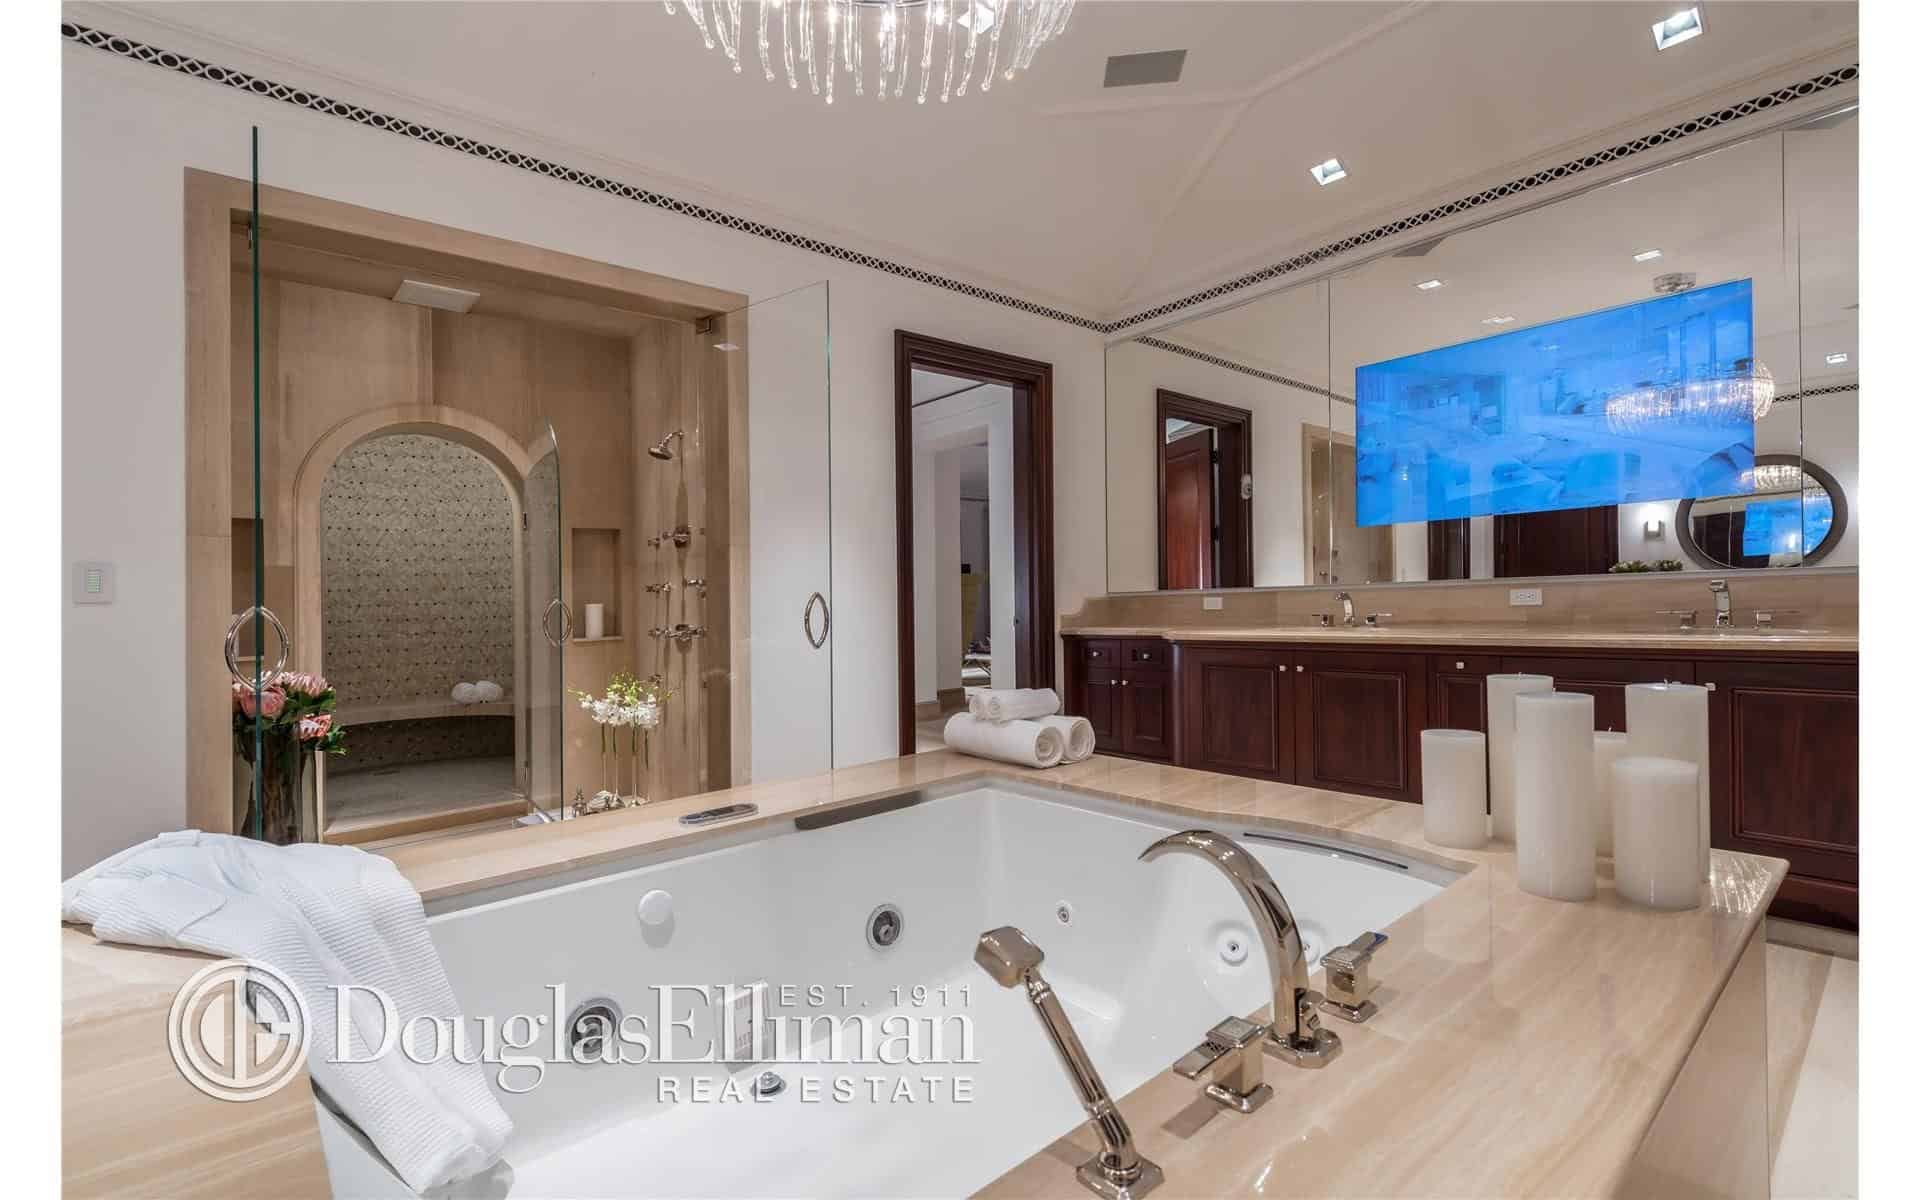 浴室的另一个视角聚焦于浴缸、吊灯和镜子上的宽屏电视。